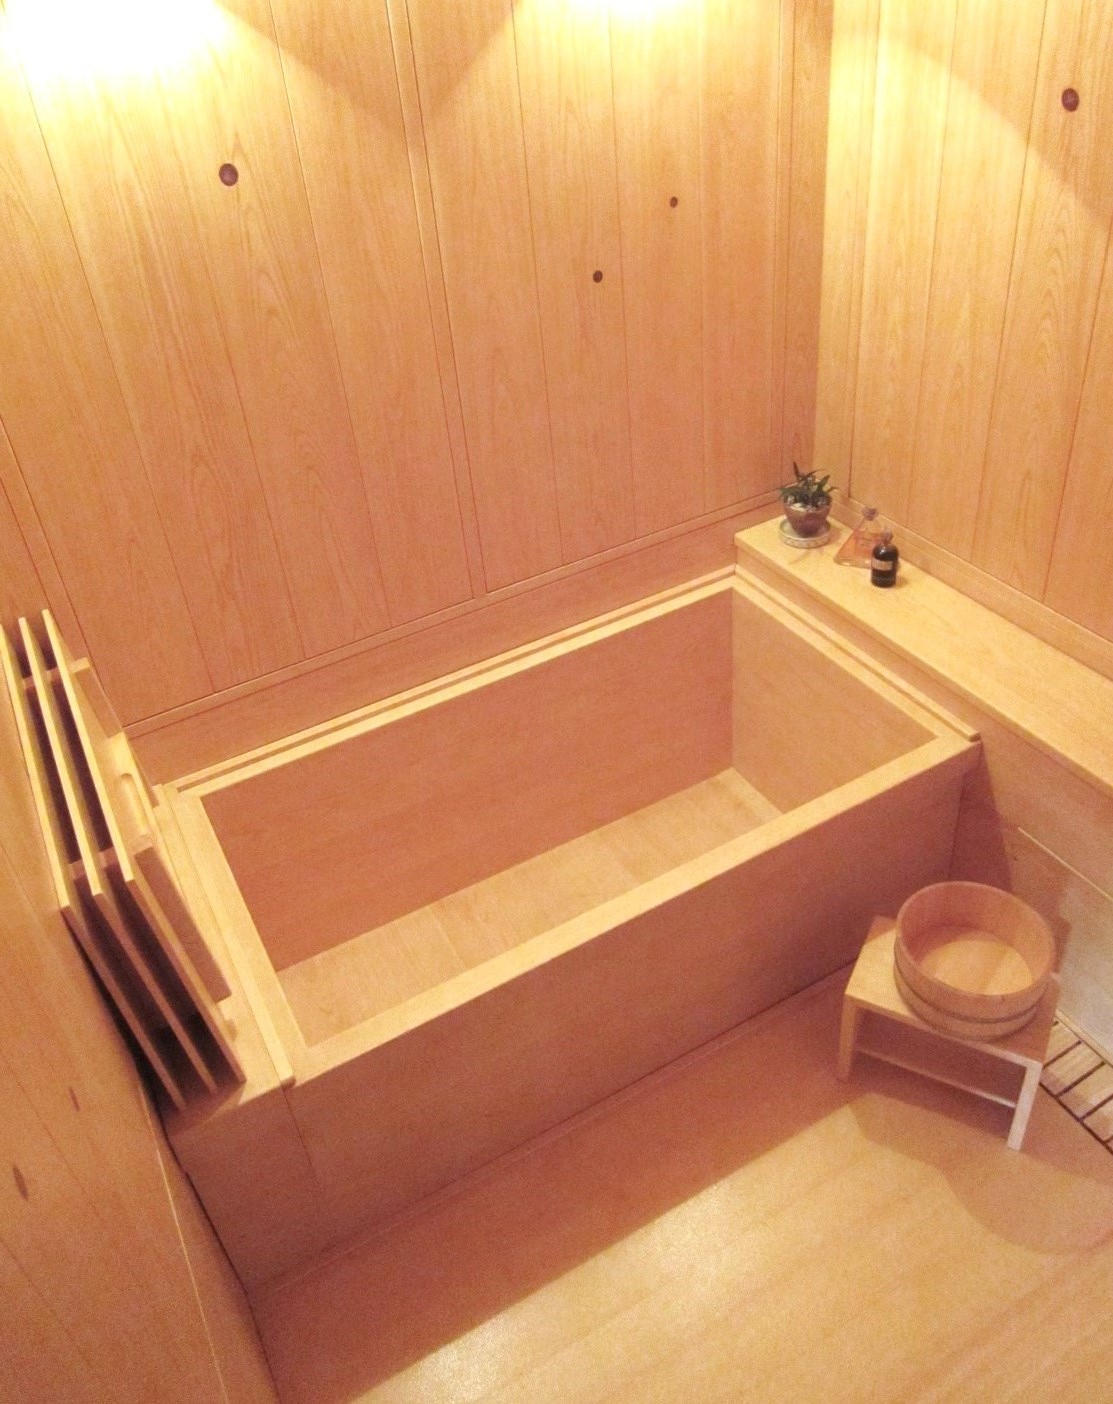 昔からの木風呂の欠点を抑制した、日本で初めての、本格的な防水加工檜風呂です。